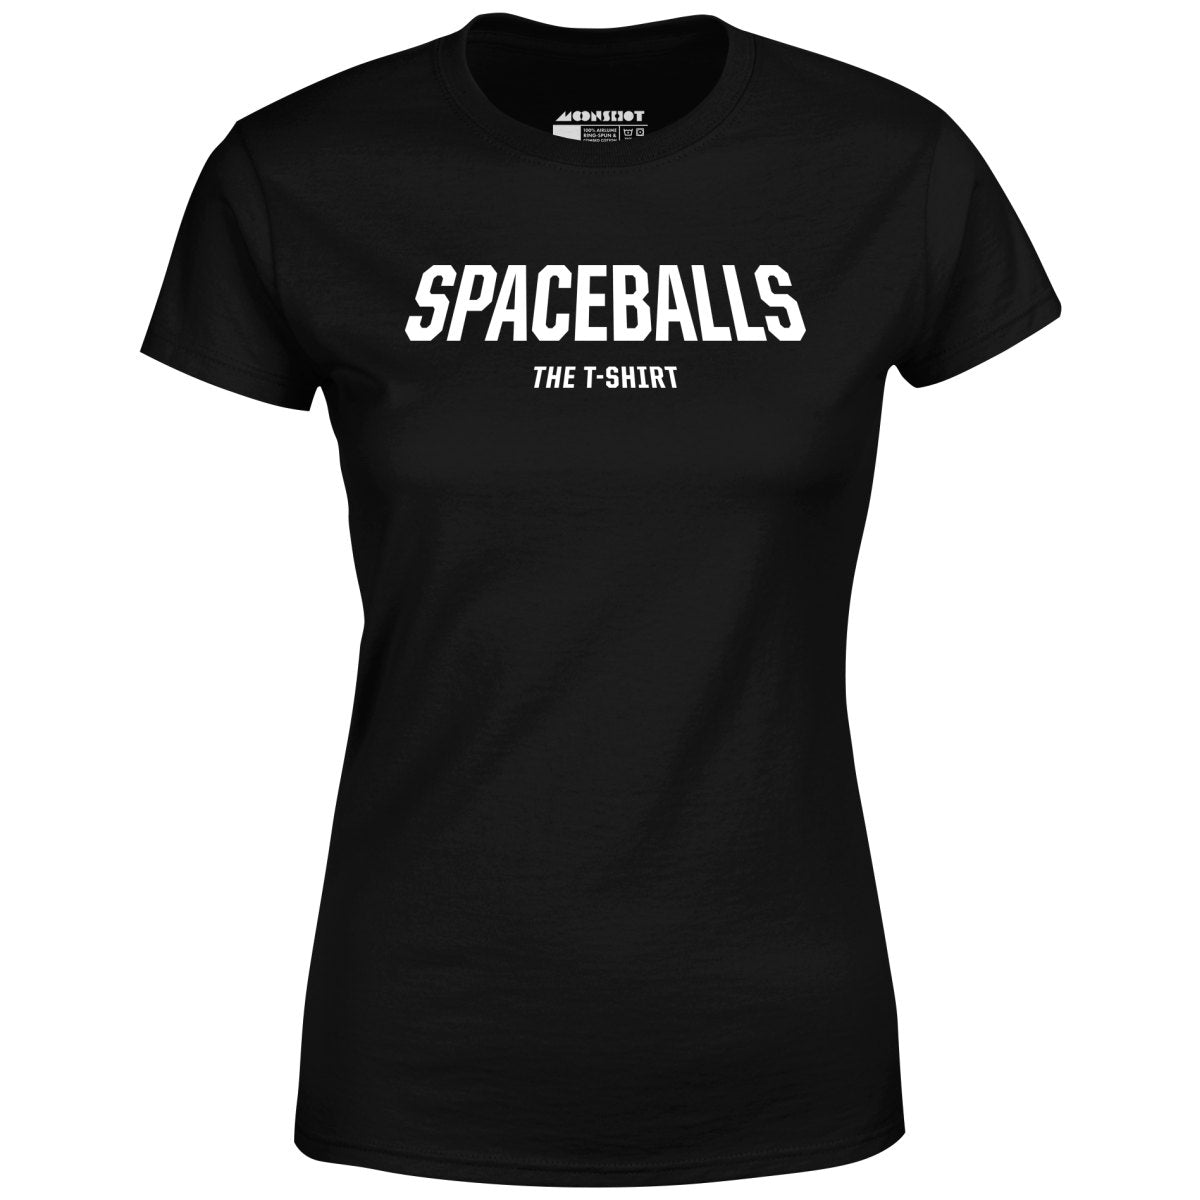 Spaceballs The T-Shirt - Women's T-Shirt